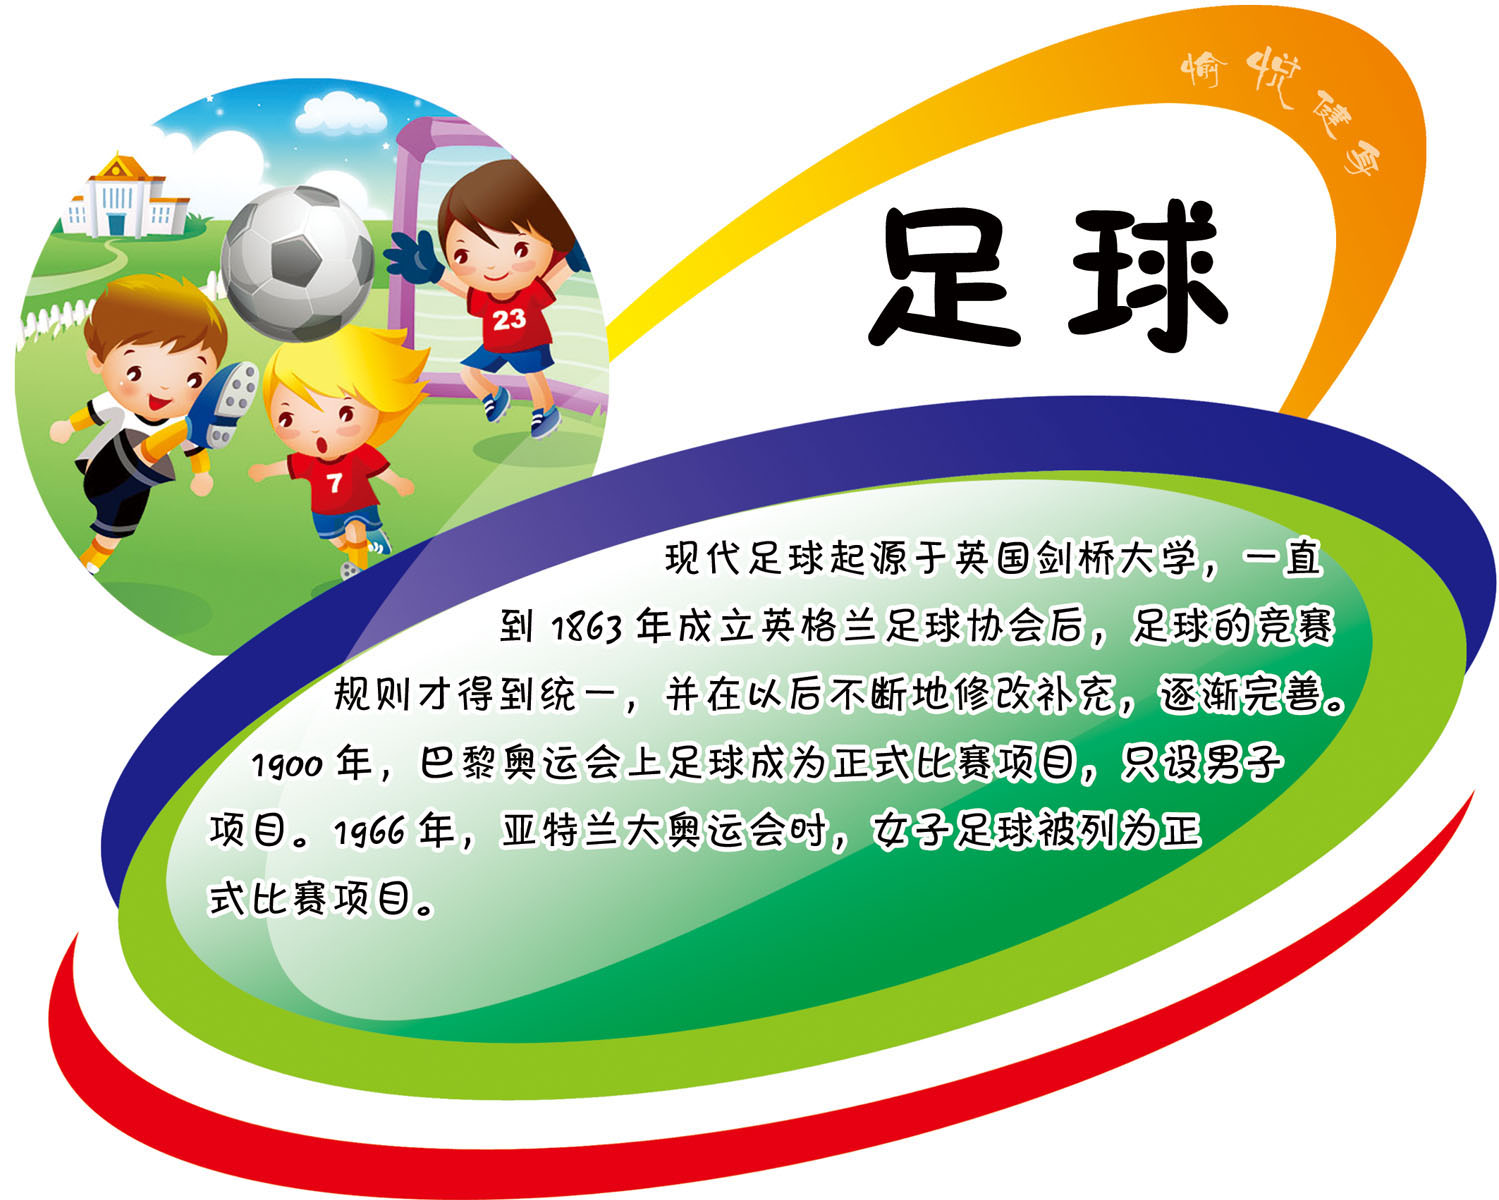 614海报印制海报展板素材243学校幼儿园体育项目介绍足球